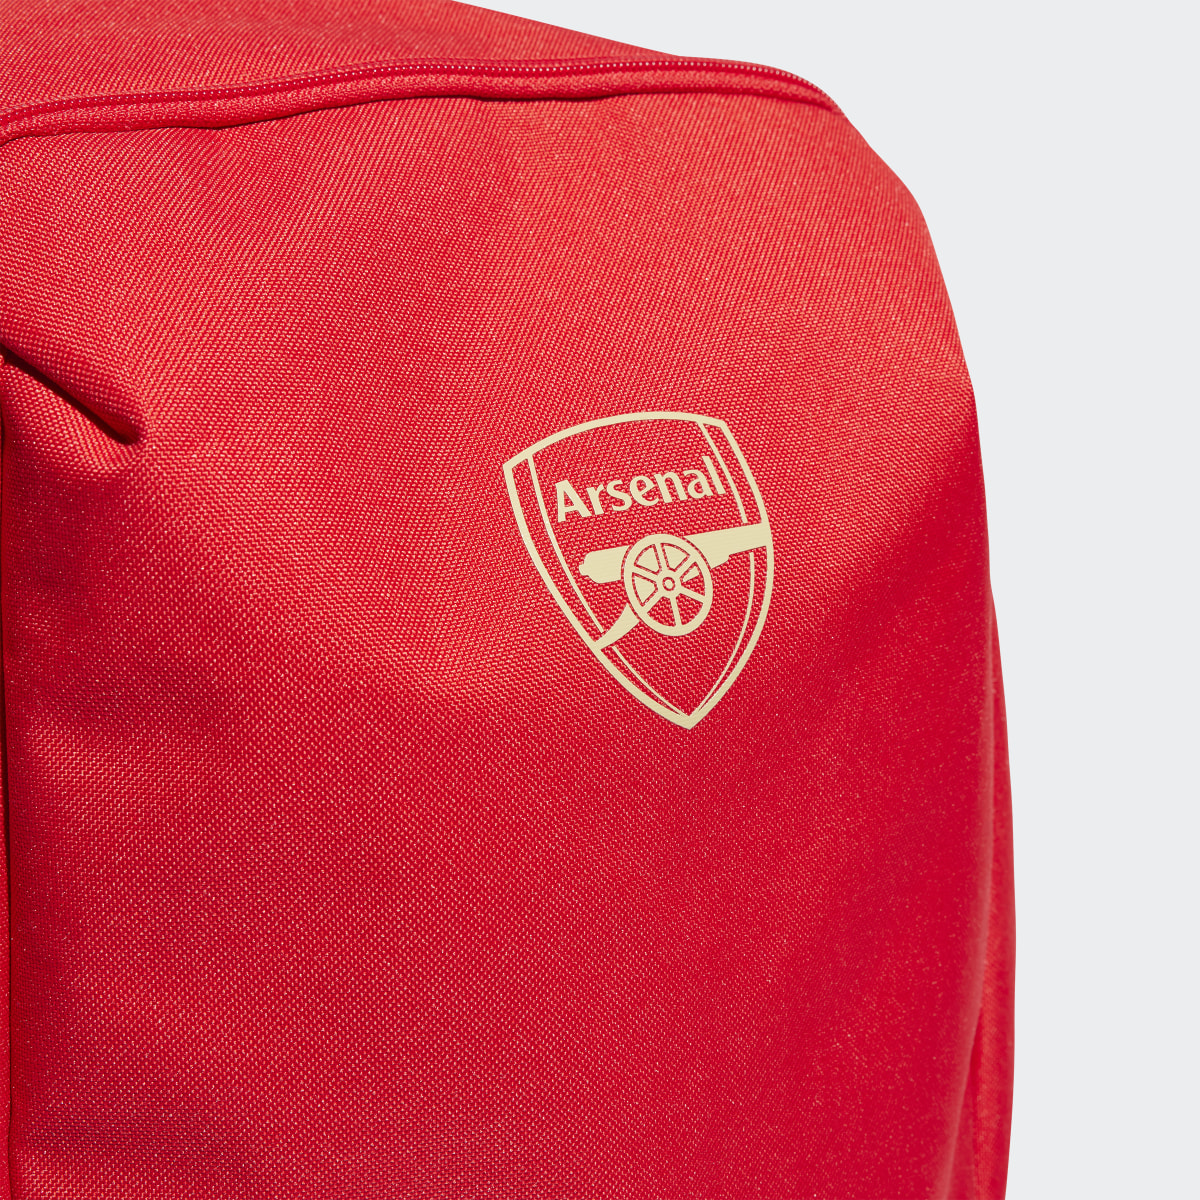 Adidas Arsenal Backpack. 6